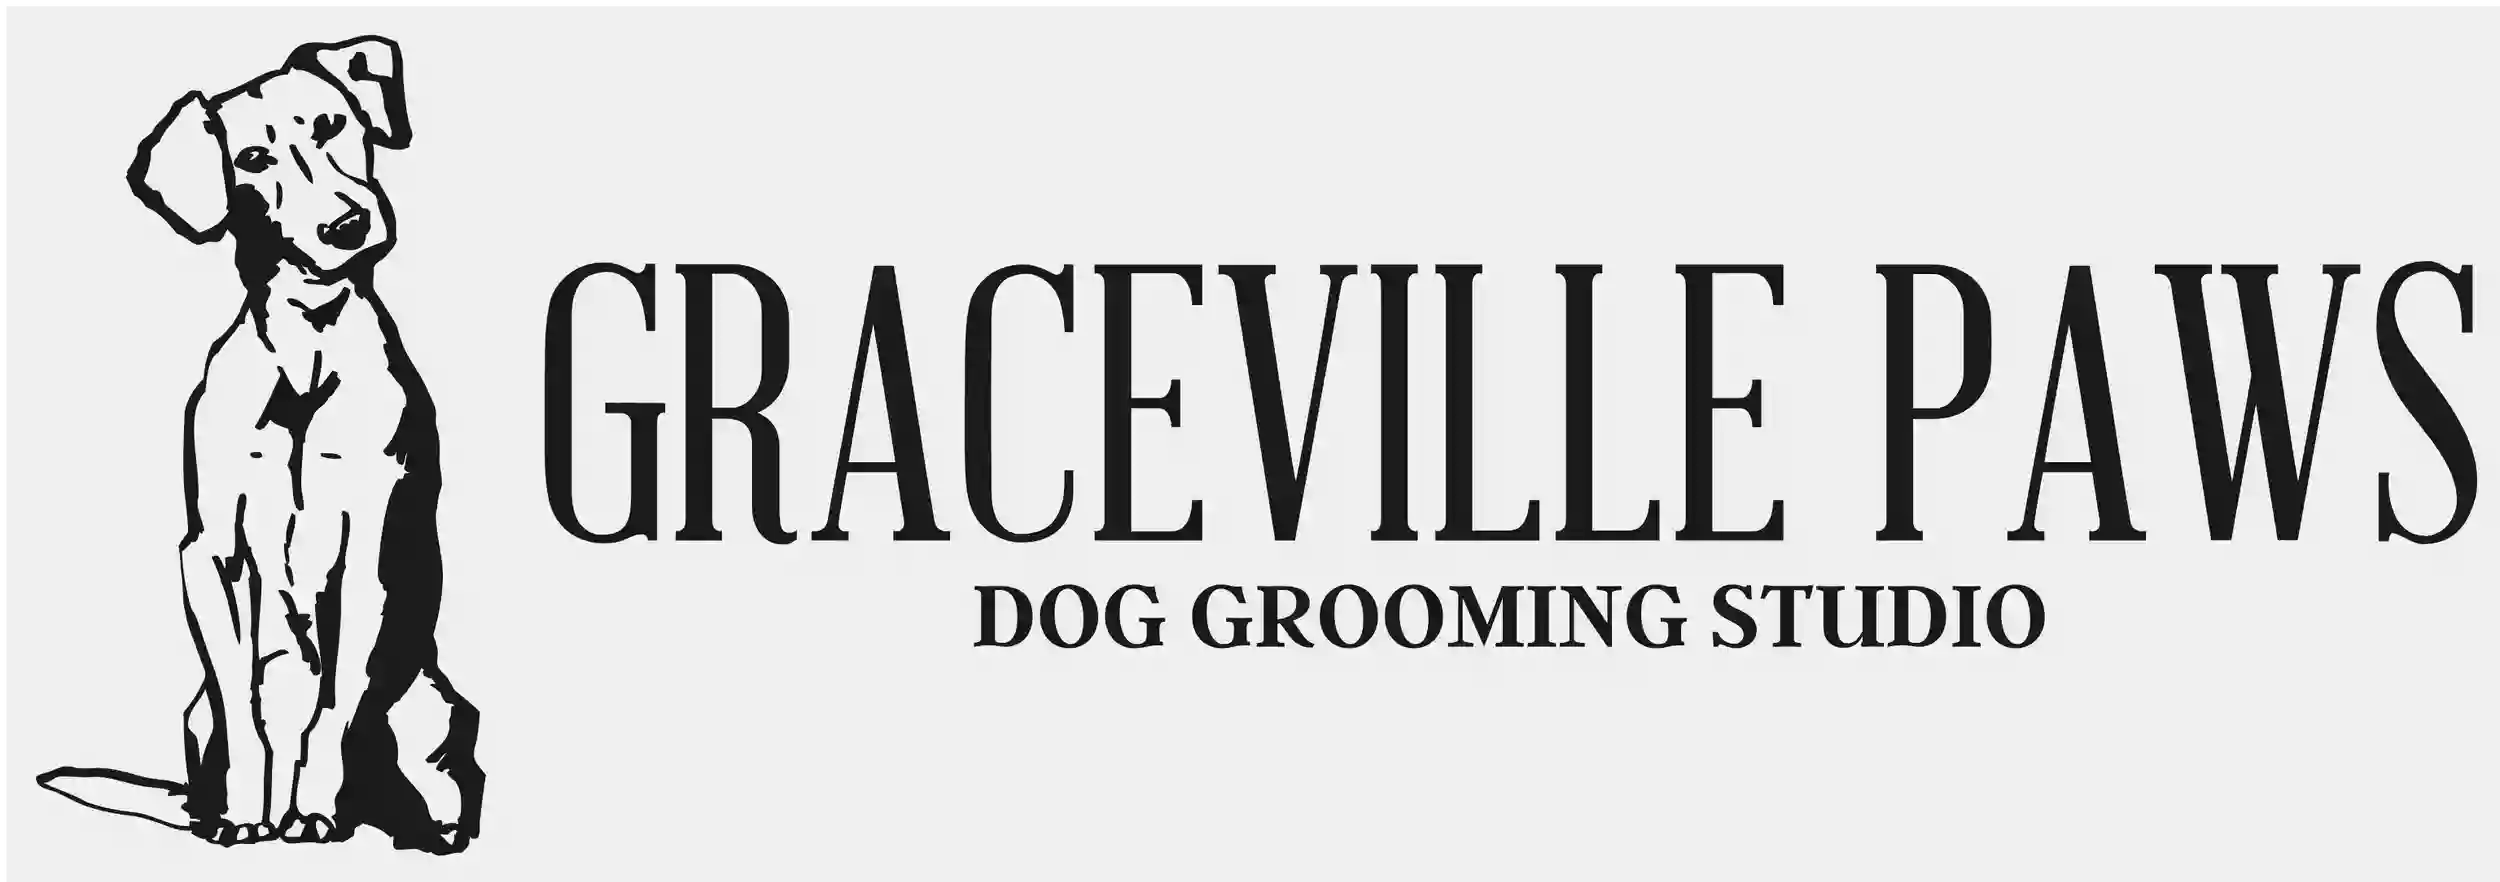 Graceville Paws